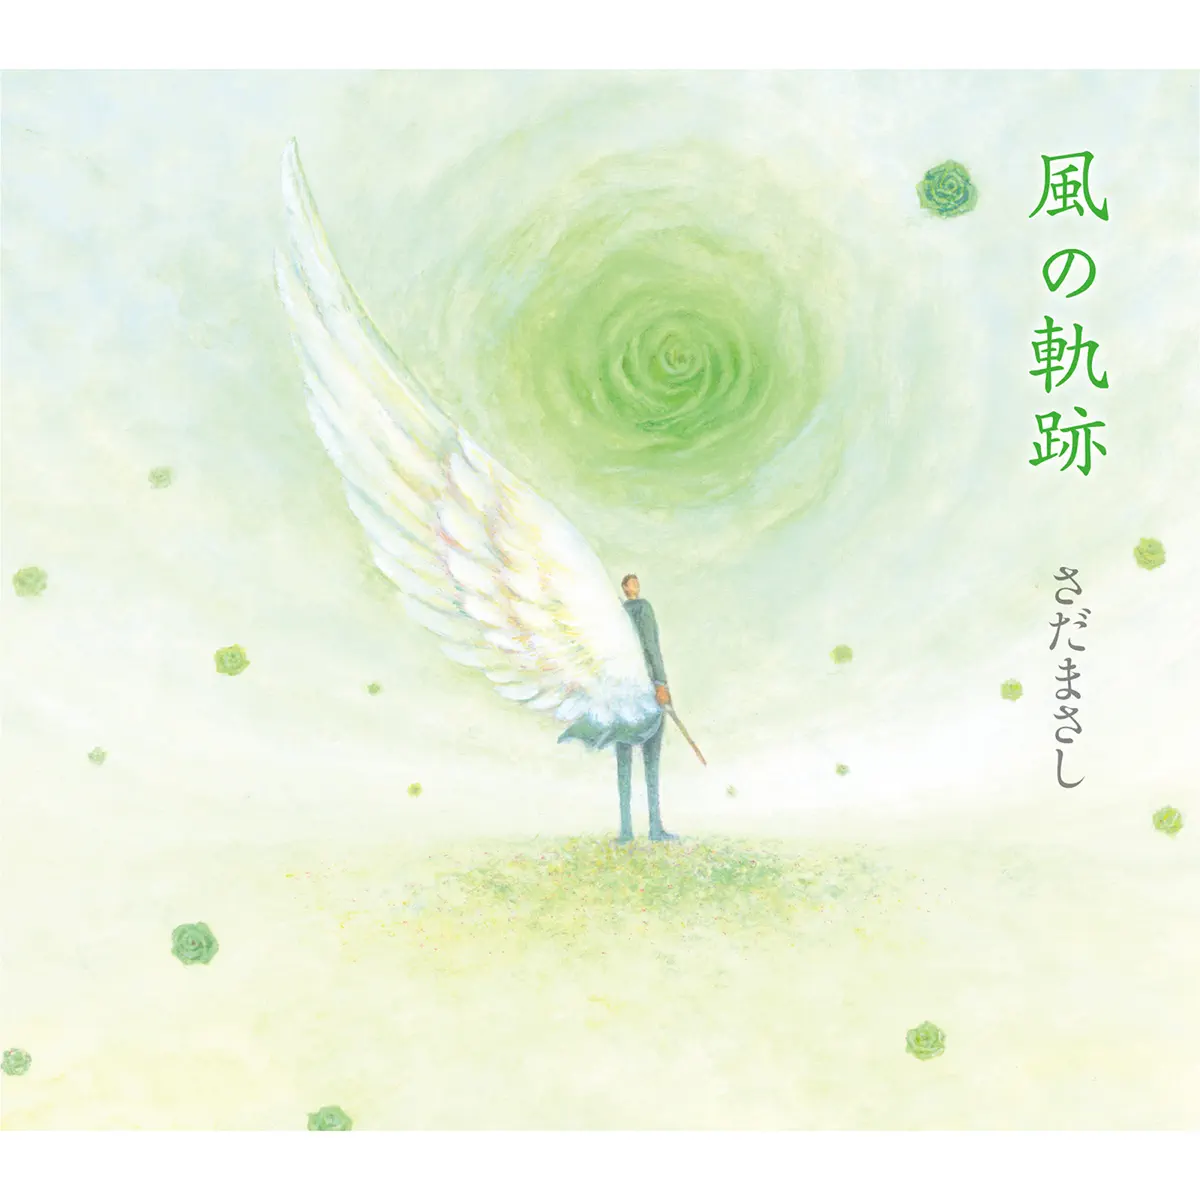 さだまさし - 風の軌跡 (2015) [iTunes Plus AAC M4A]-新房子